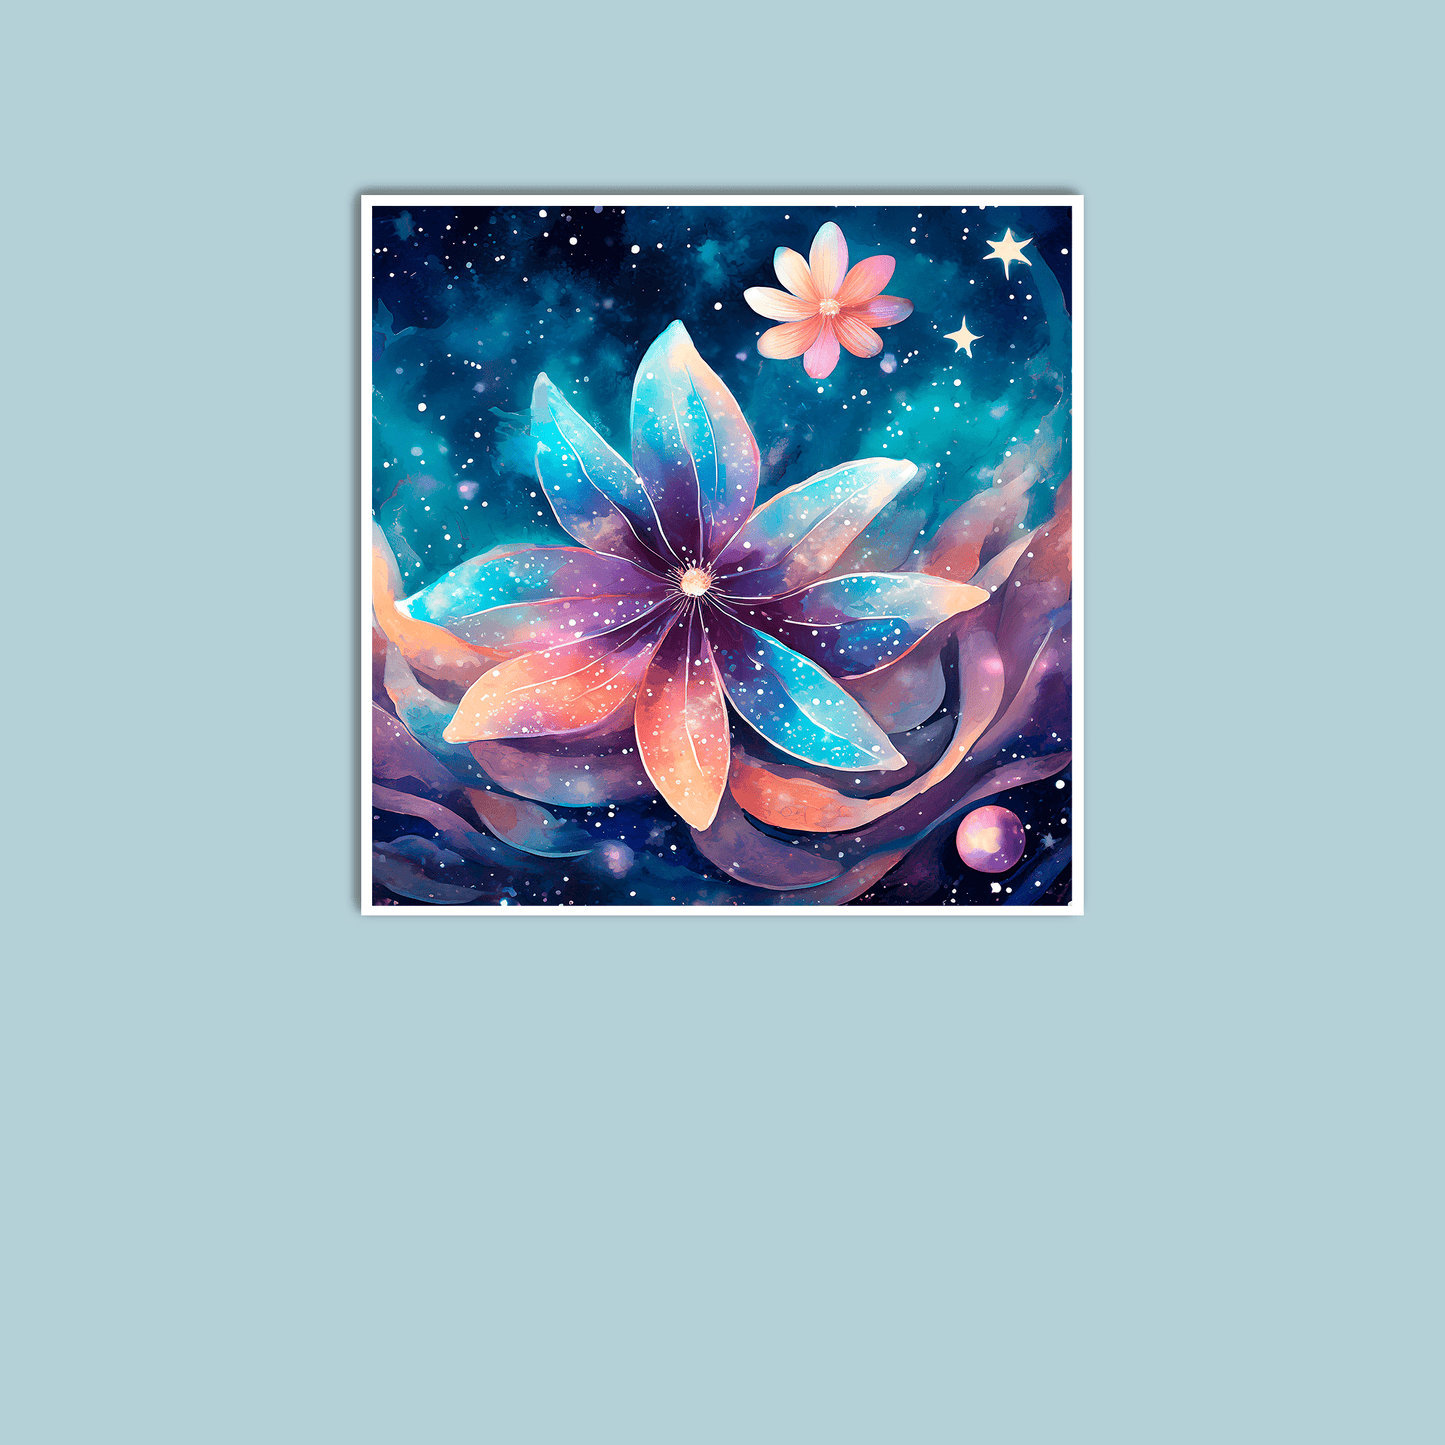 Cosmic Moon Flower - Art Print - Unframed - Premium Unframed Art Print